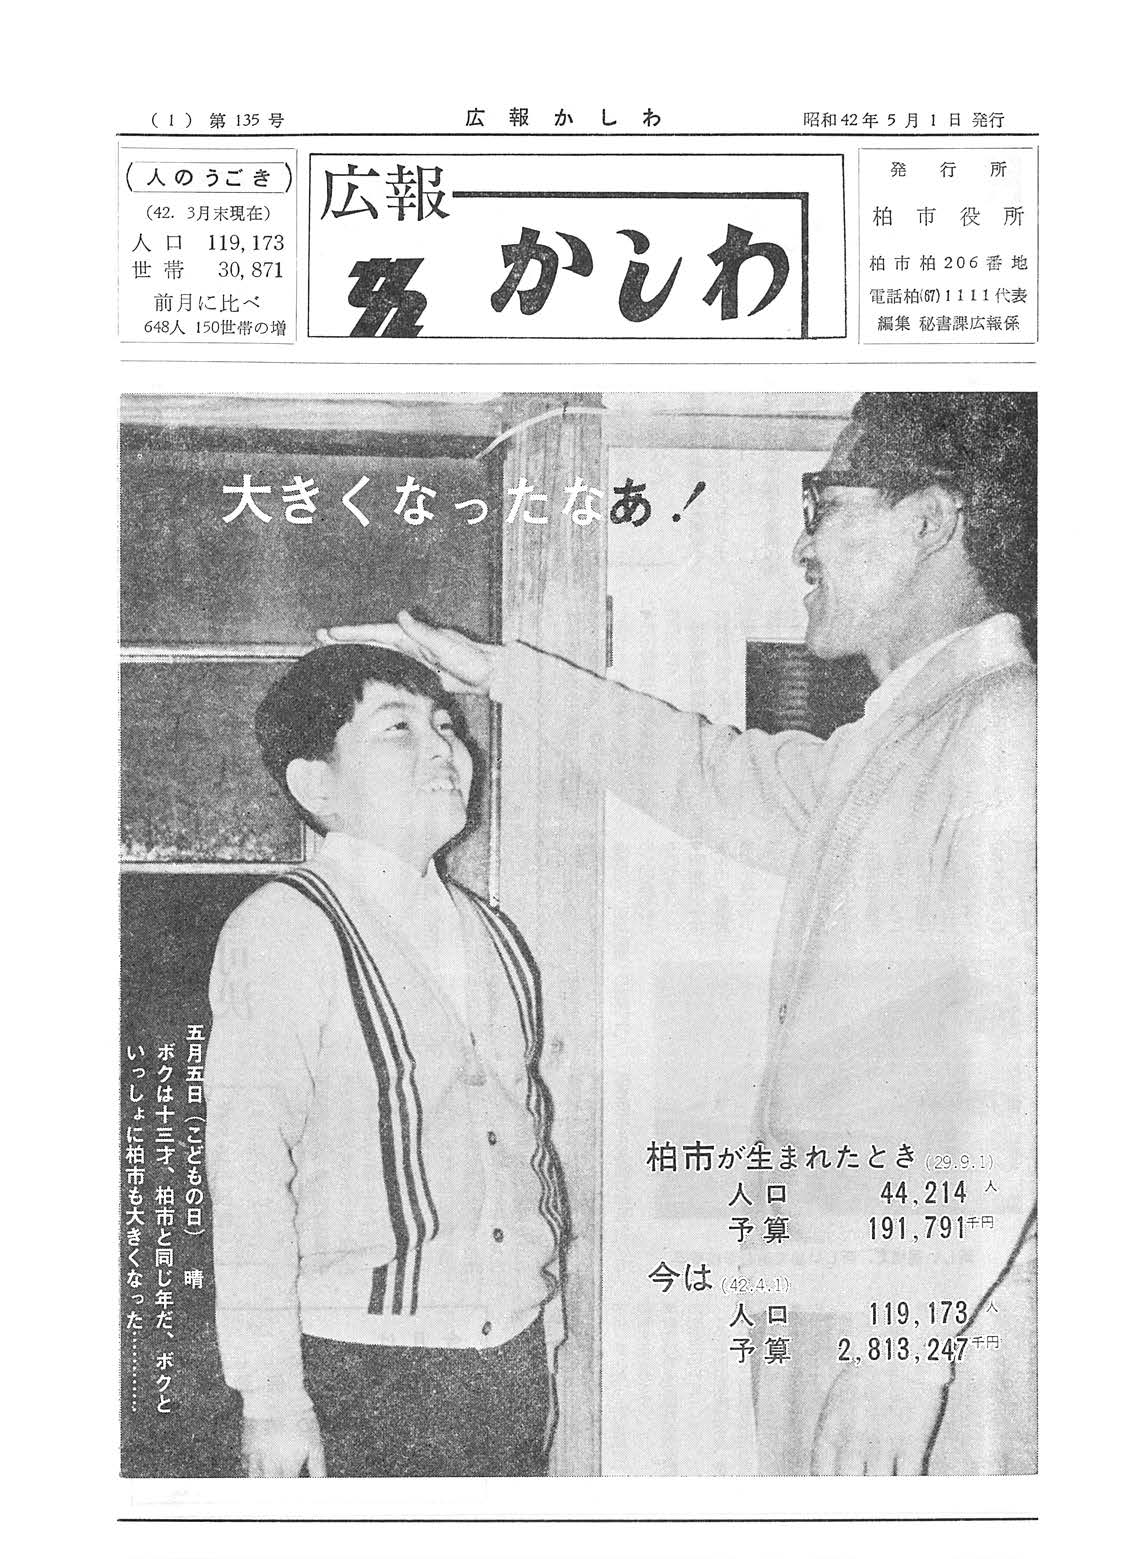 広報かしわ　昭和42年5月1日発行　135号